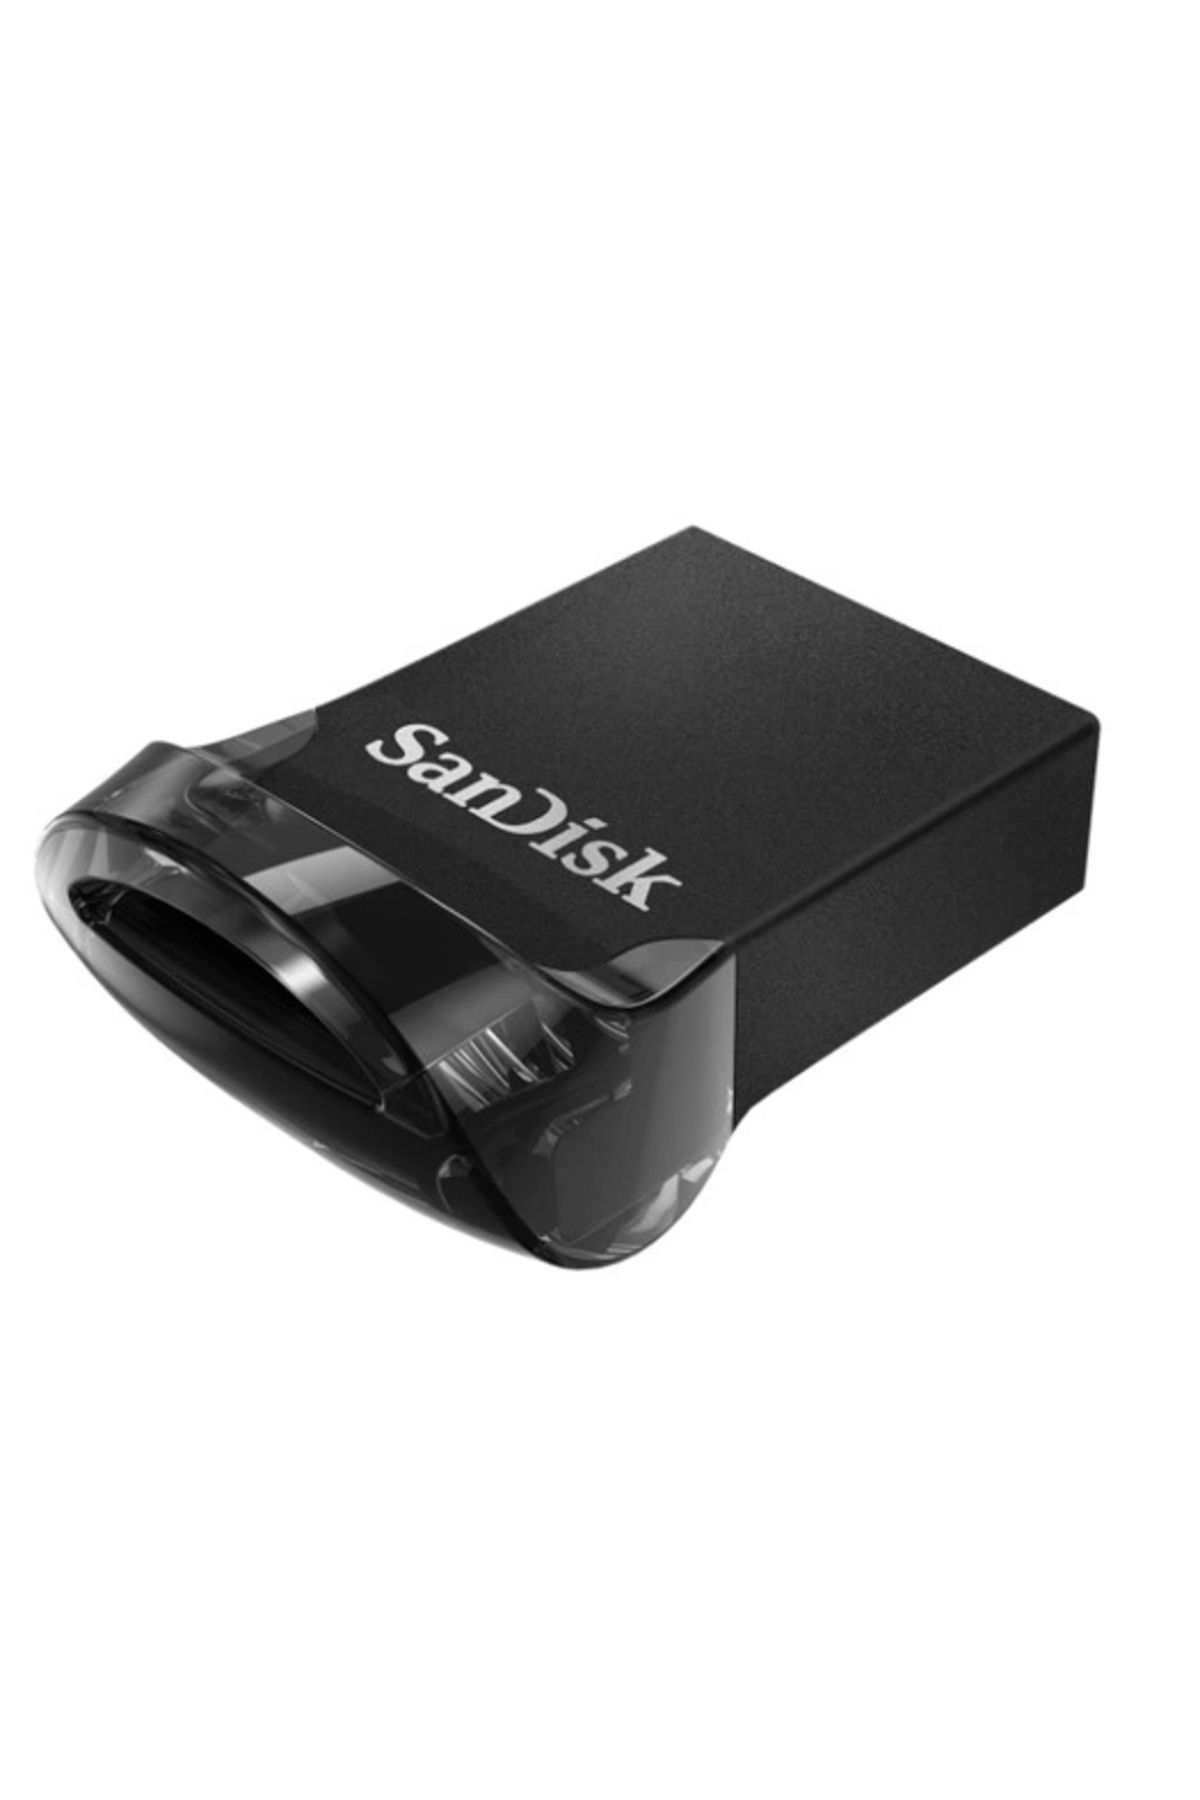 Sandisk Ultra Fit™ Usb 3.1 256gb - Small Form Factor Plug Stay Hi-speed Usb Drive